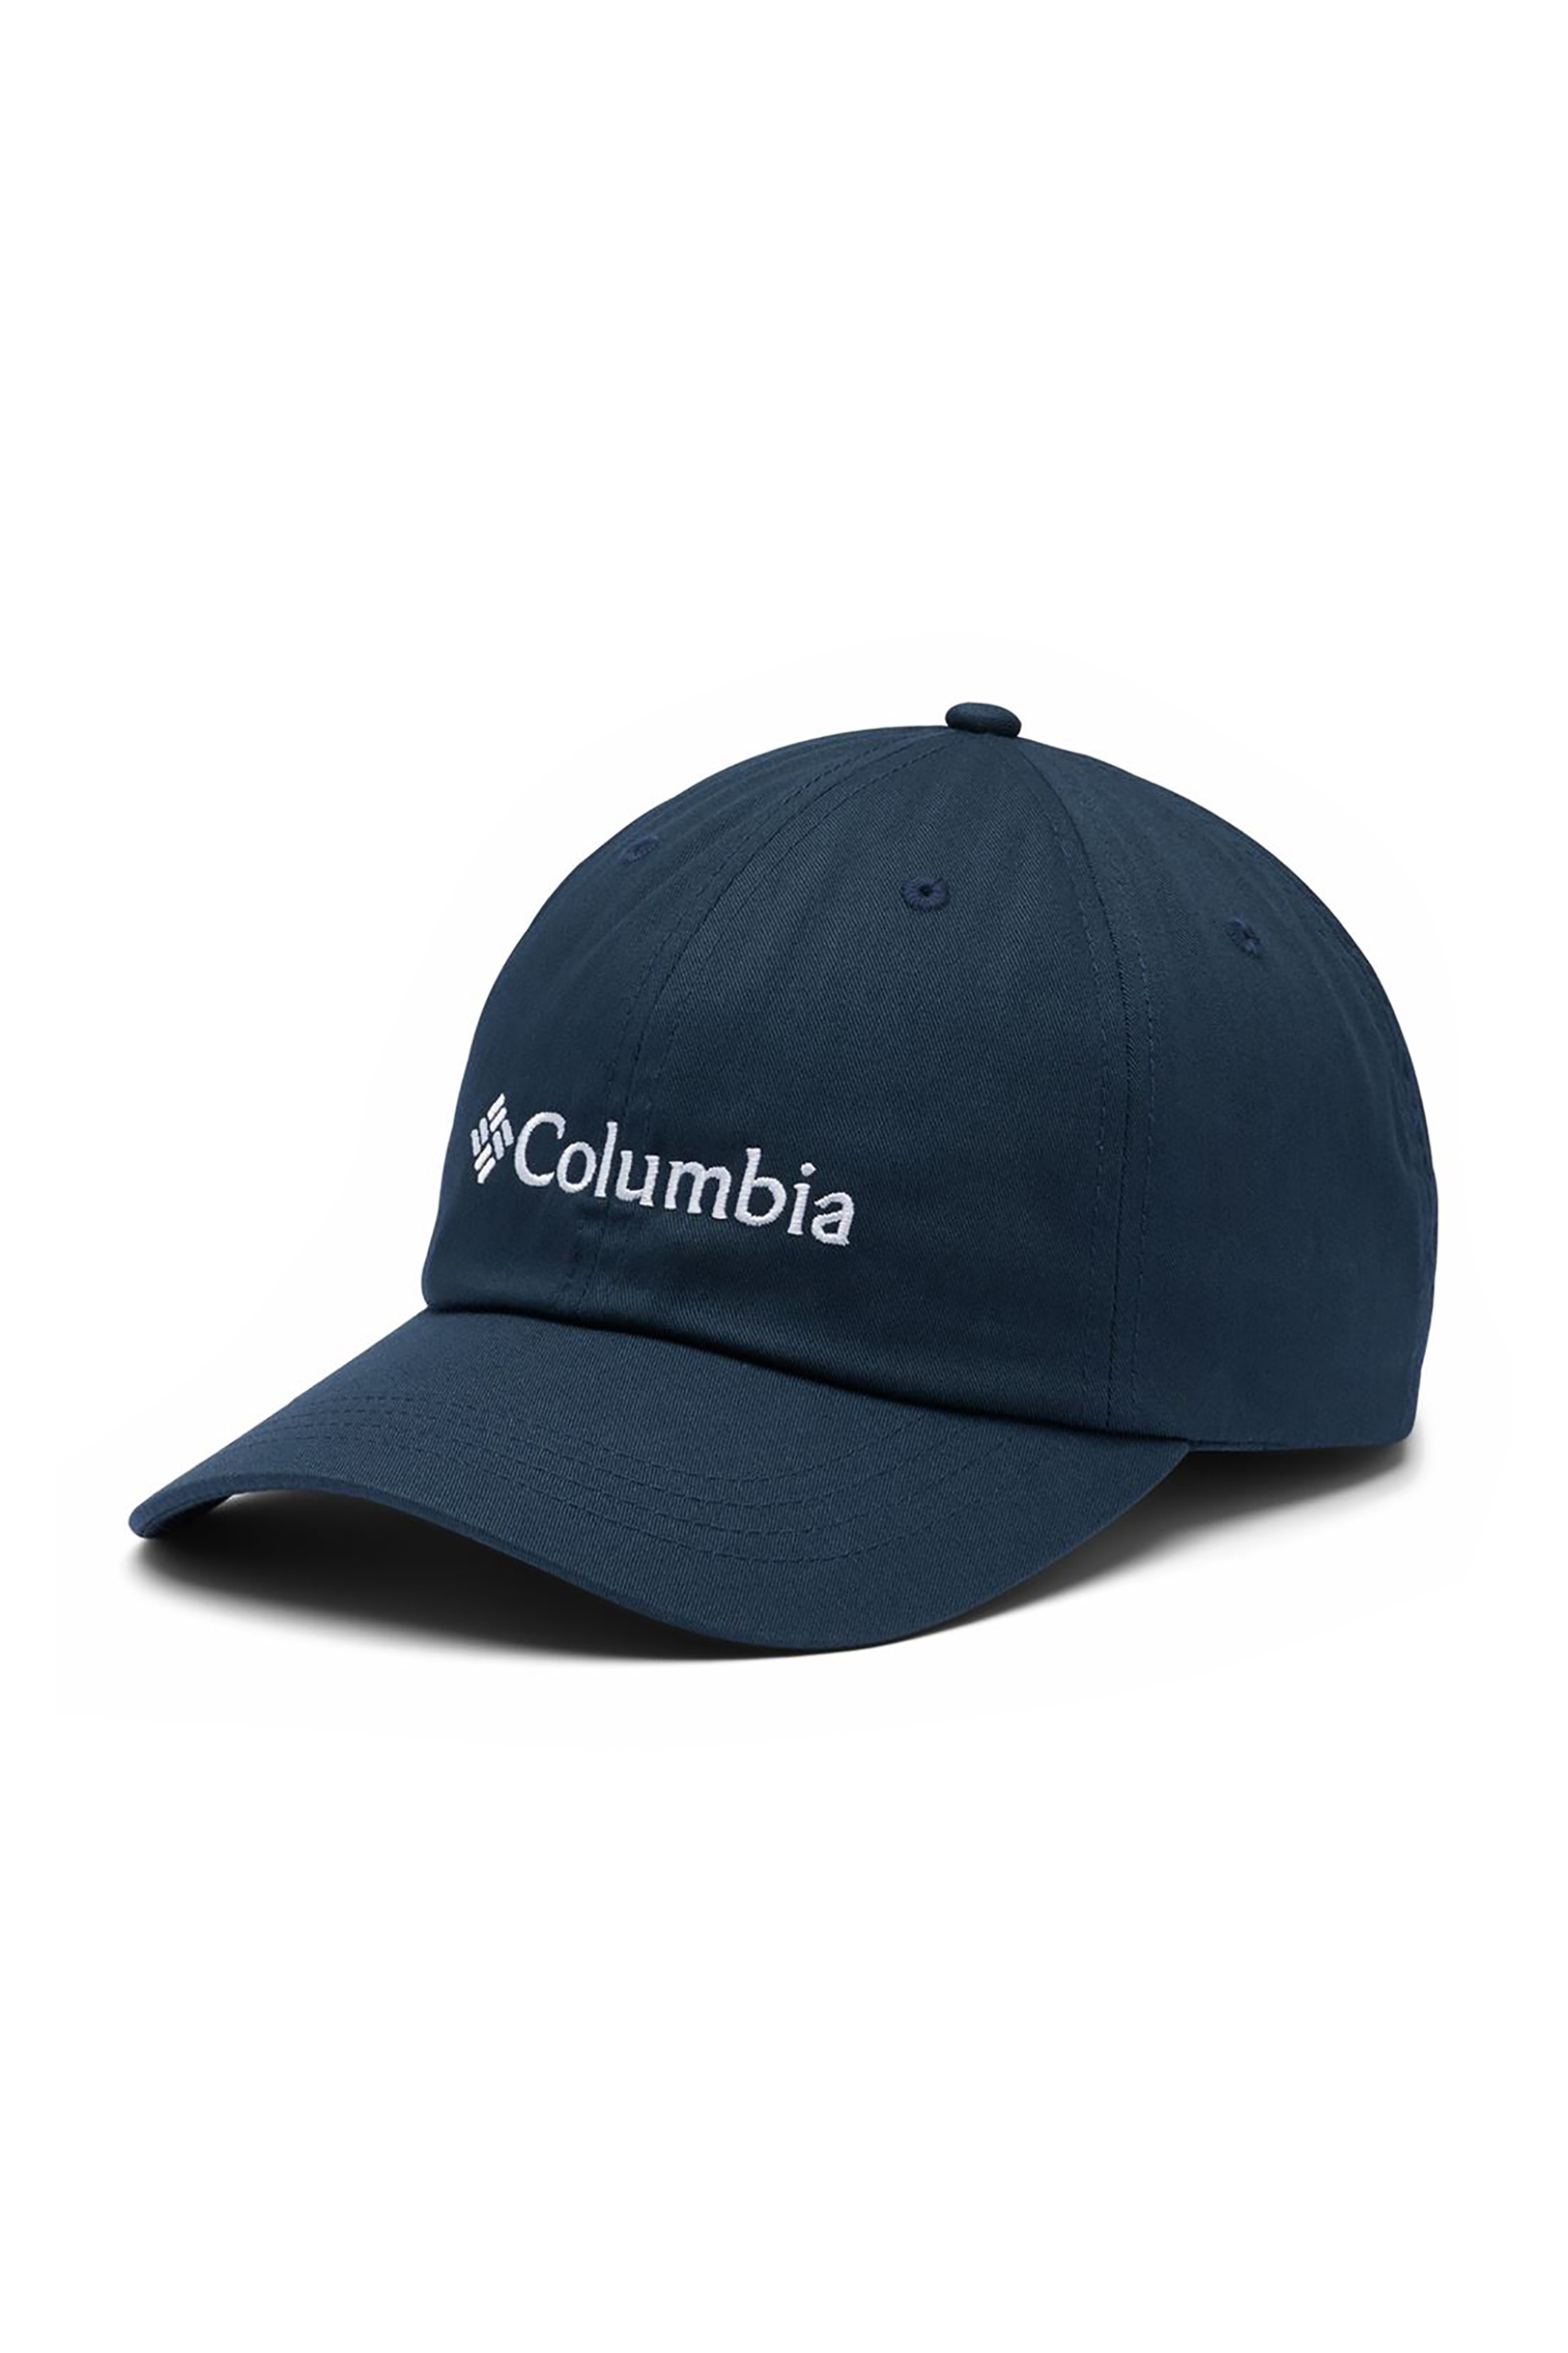 Ανδρική Μόδα > Ανδρικά Αξεσουάρ > Ανδρικά Καπέλα & Σκούφοι Columbia unisex καπέλο jockey με κεντημένο λογότυπο ''Rοc™ II'' - CU0019468TEM Μπλε Σκούρο